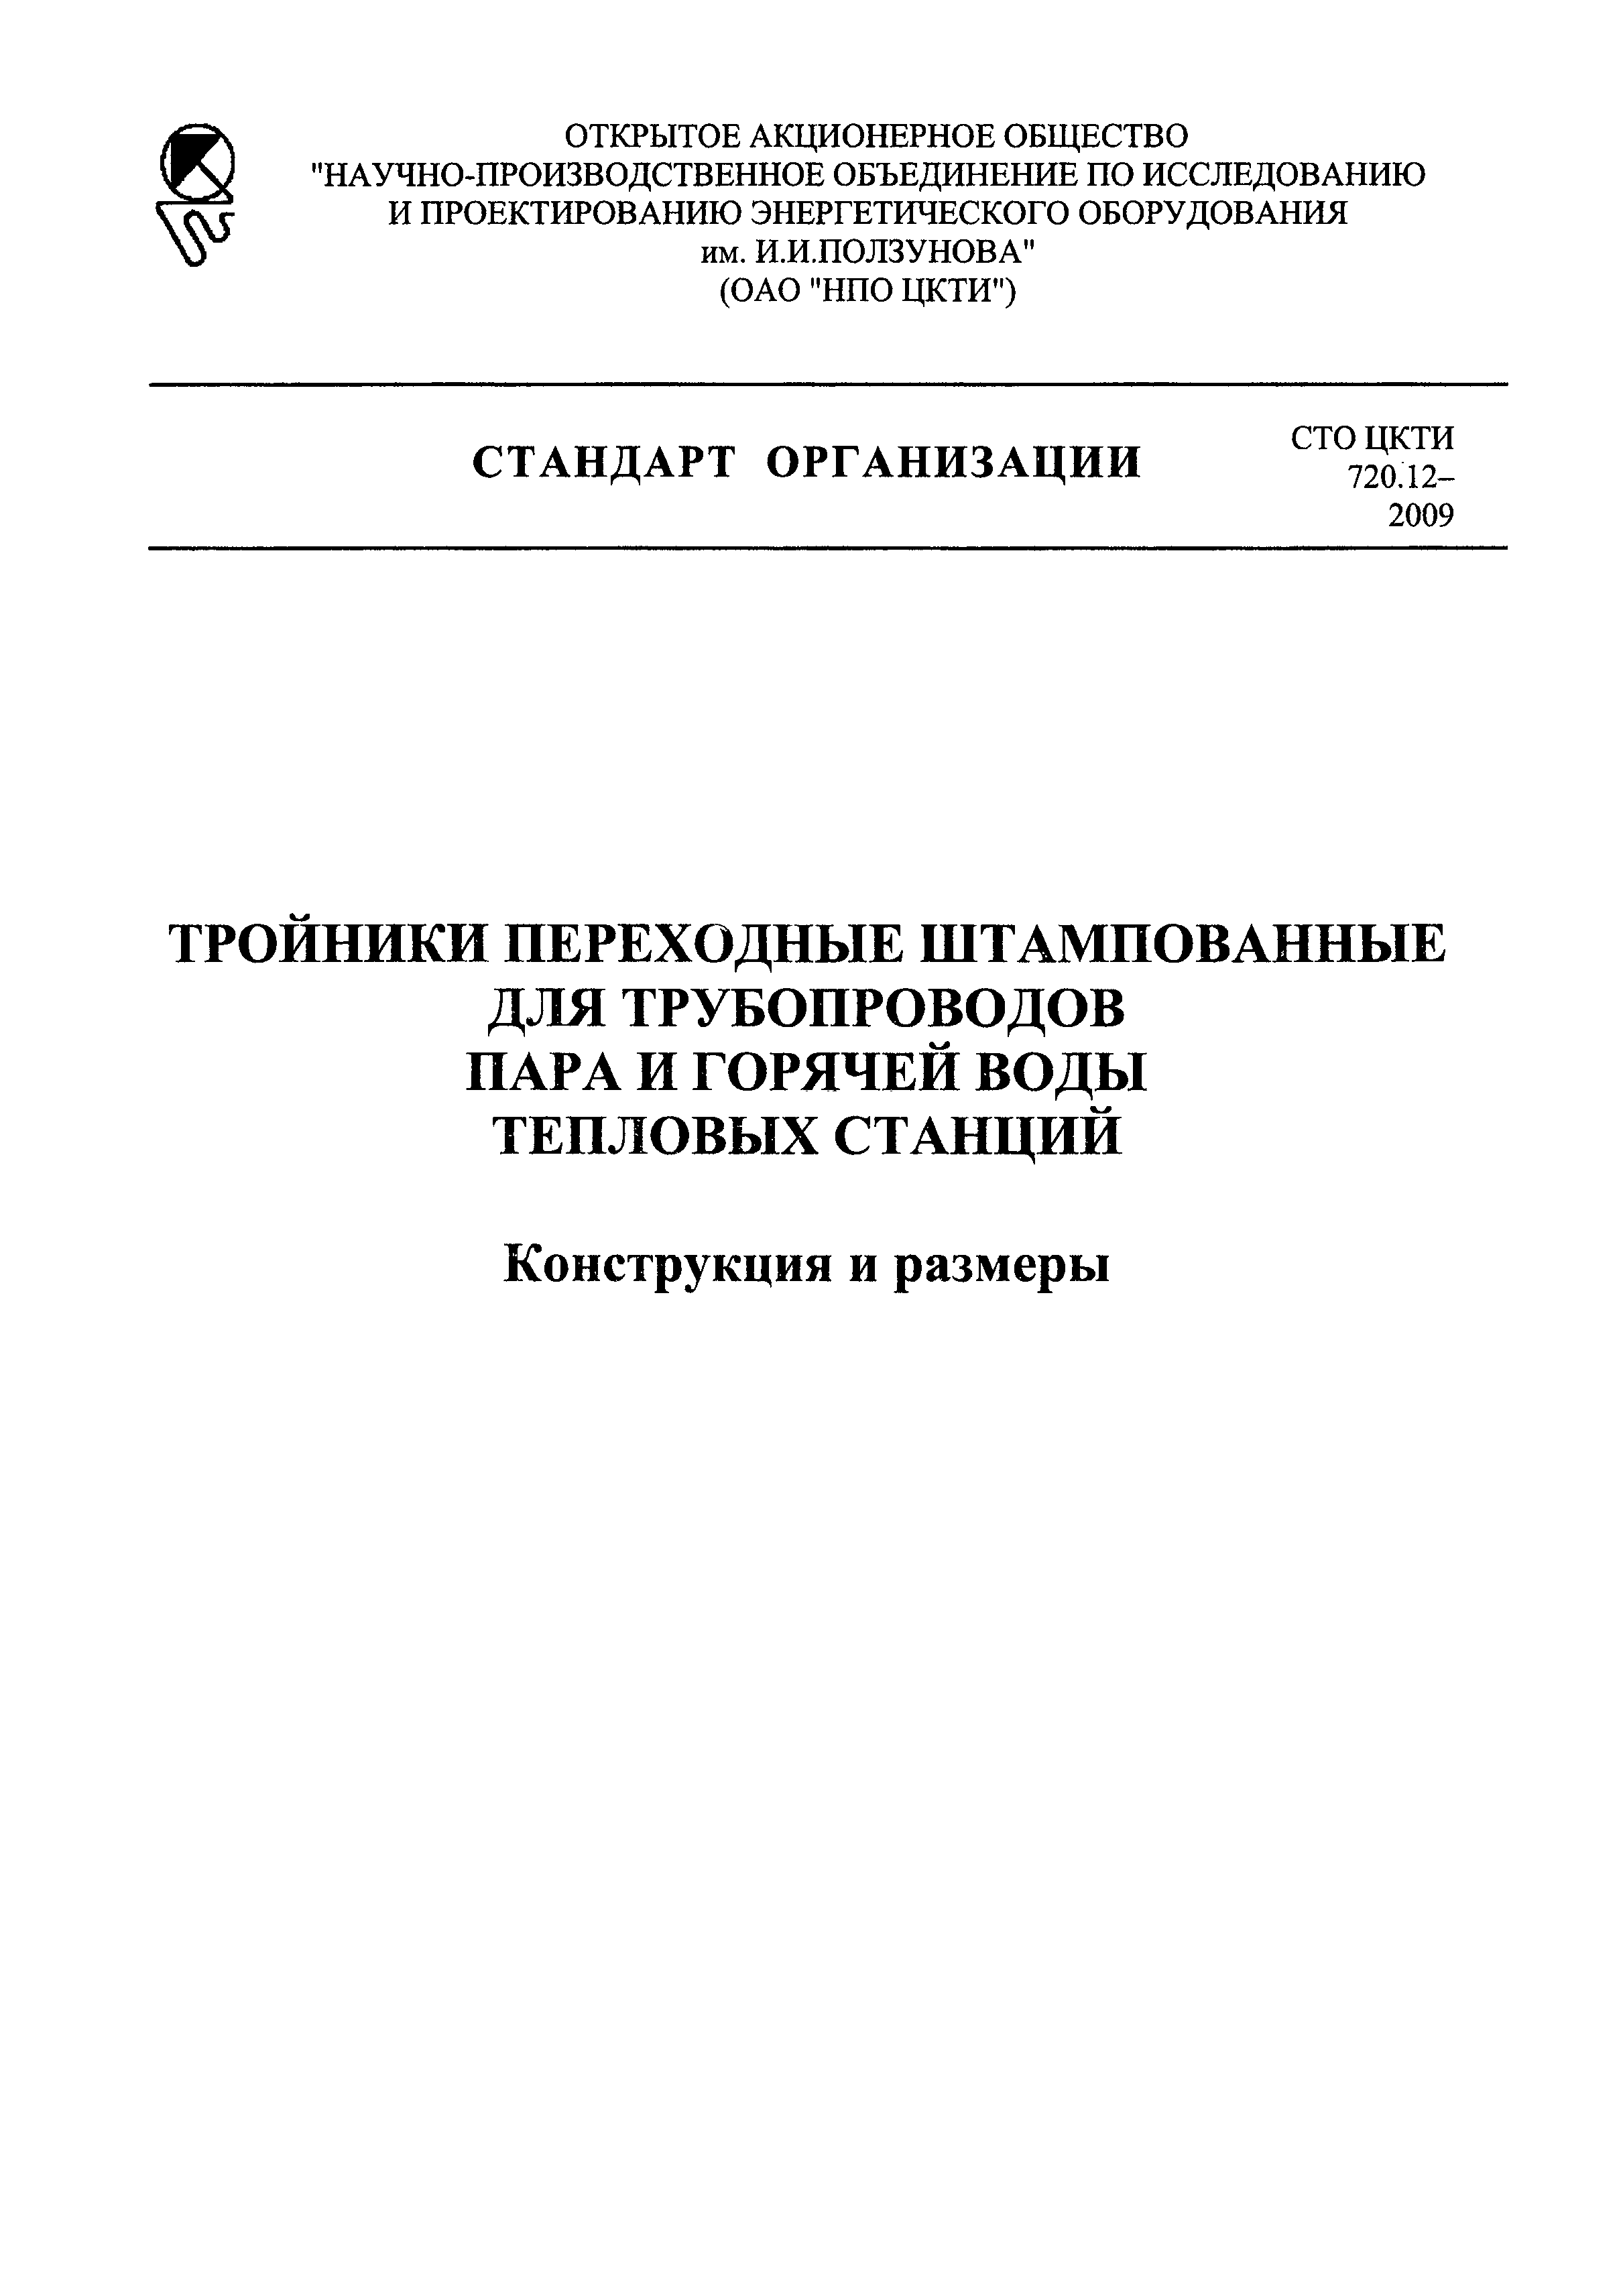 СТО ЦКТИ 720.12-2009